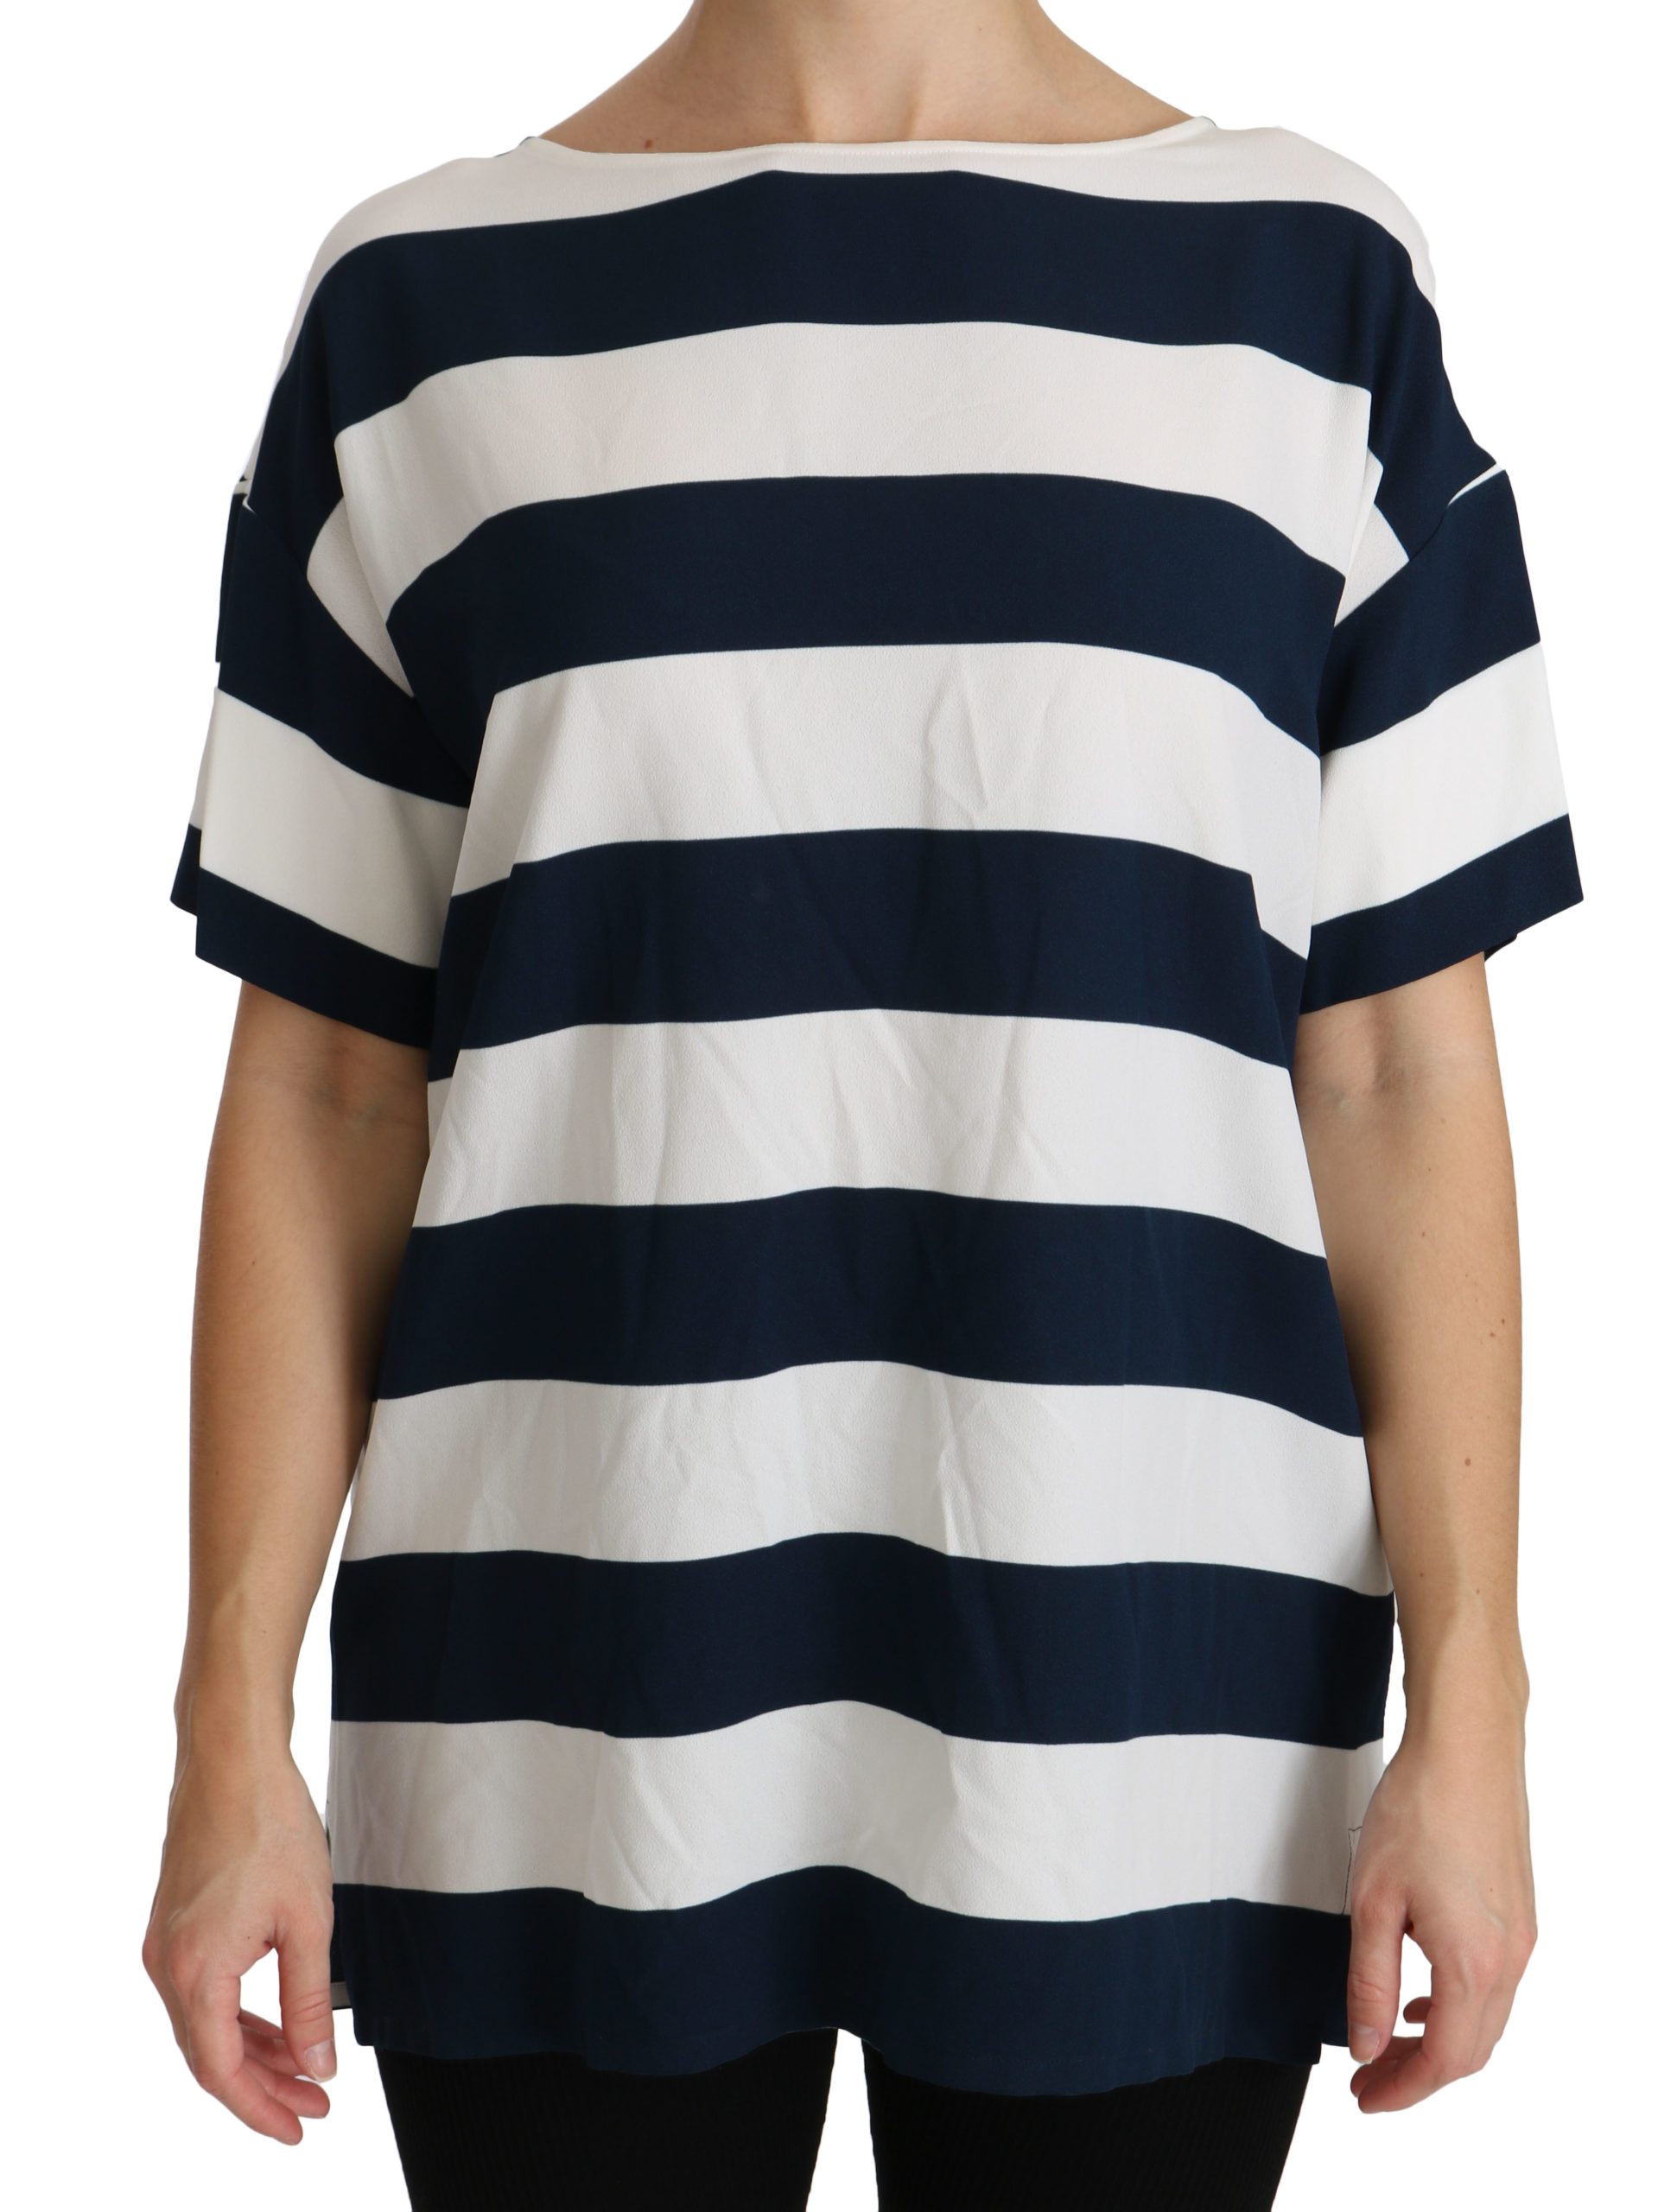 Dolce & Gabbana Women's Stripes Tops Blue/White TSH4312 - IT48|XXL